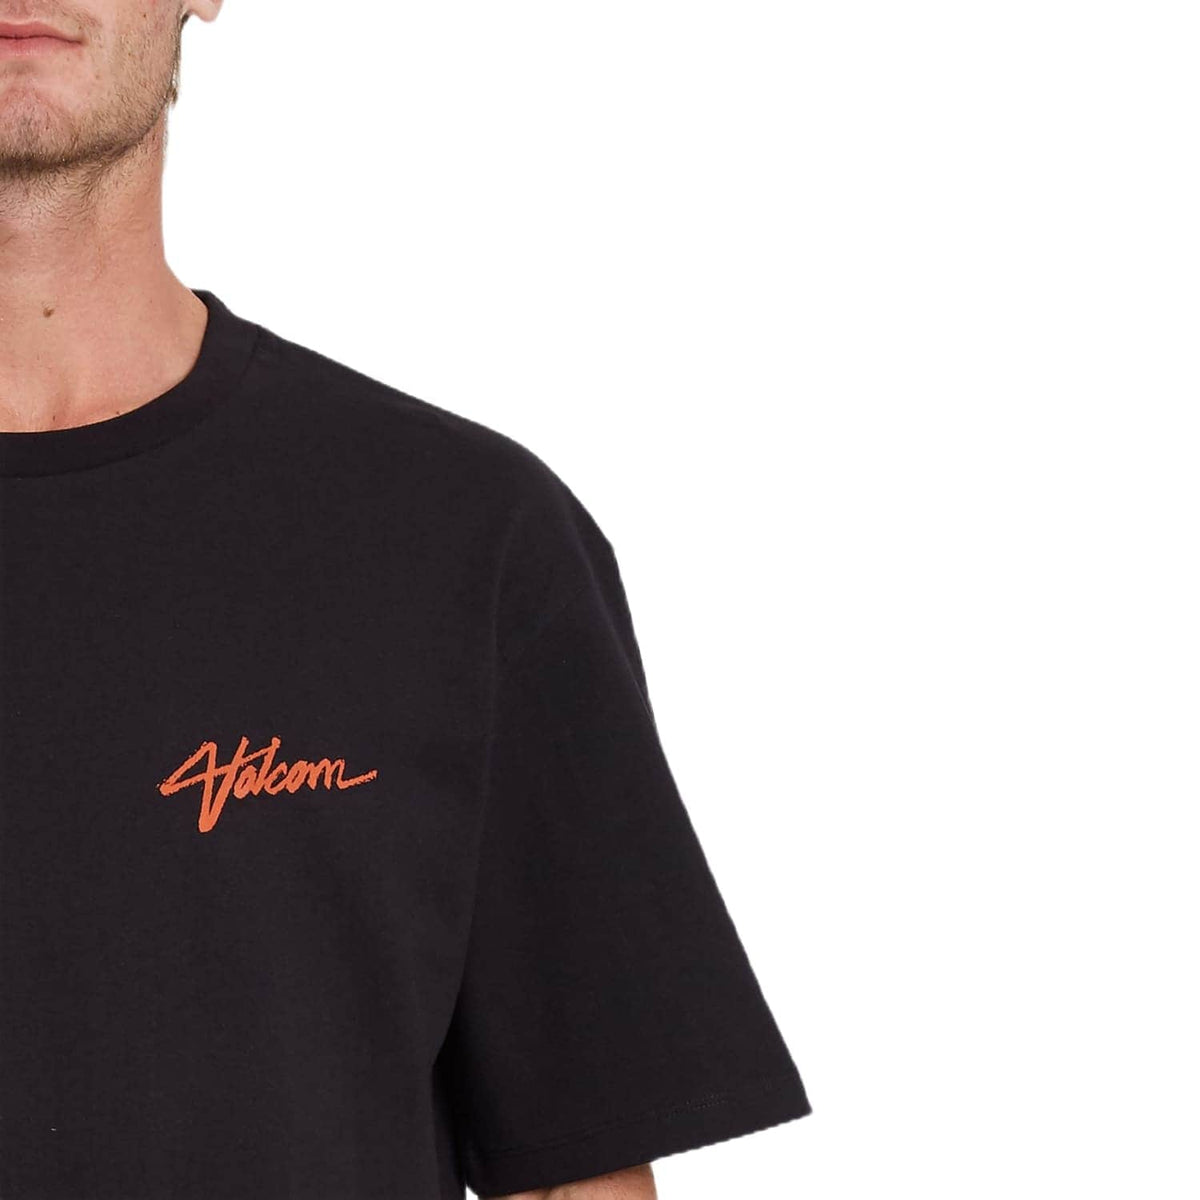 Volcom Sludge T-Shirt - Black - Mens Surf Brand T-Shirt by Volcom